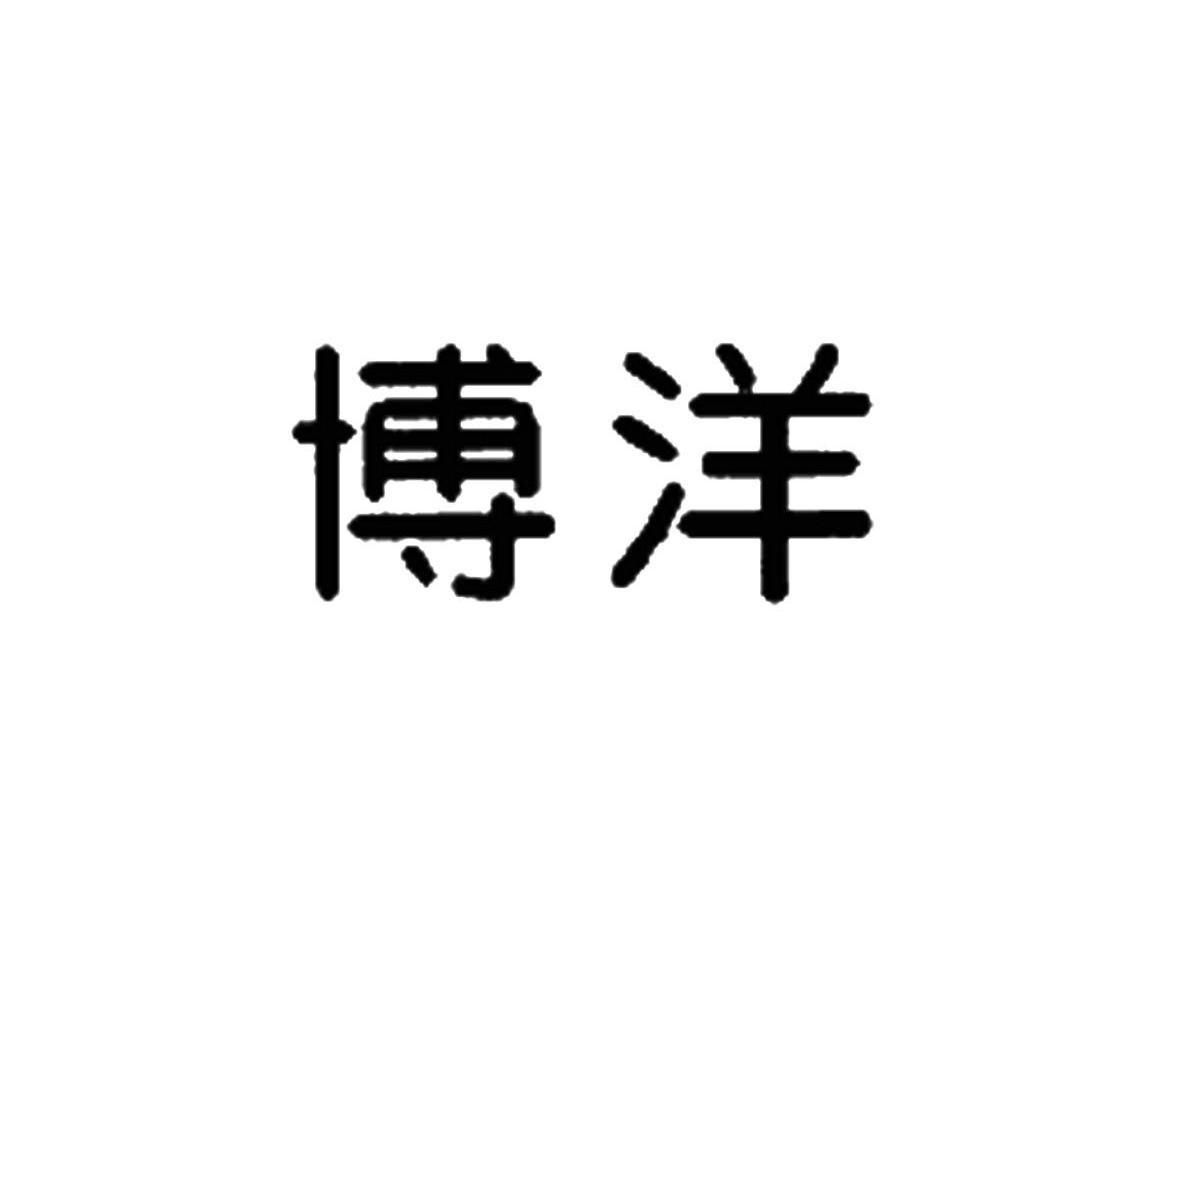 博洋家纺 logo图片